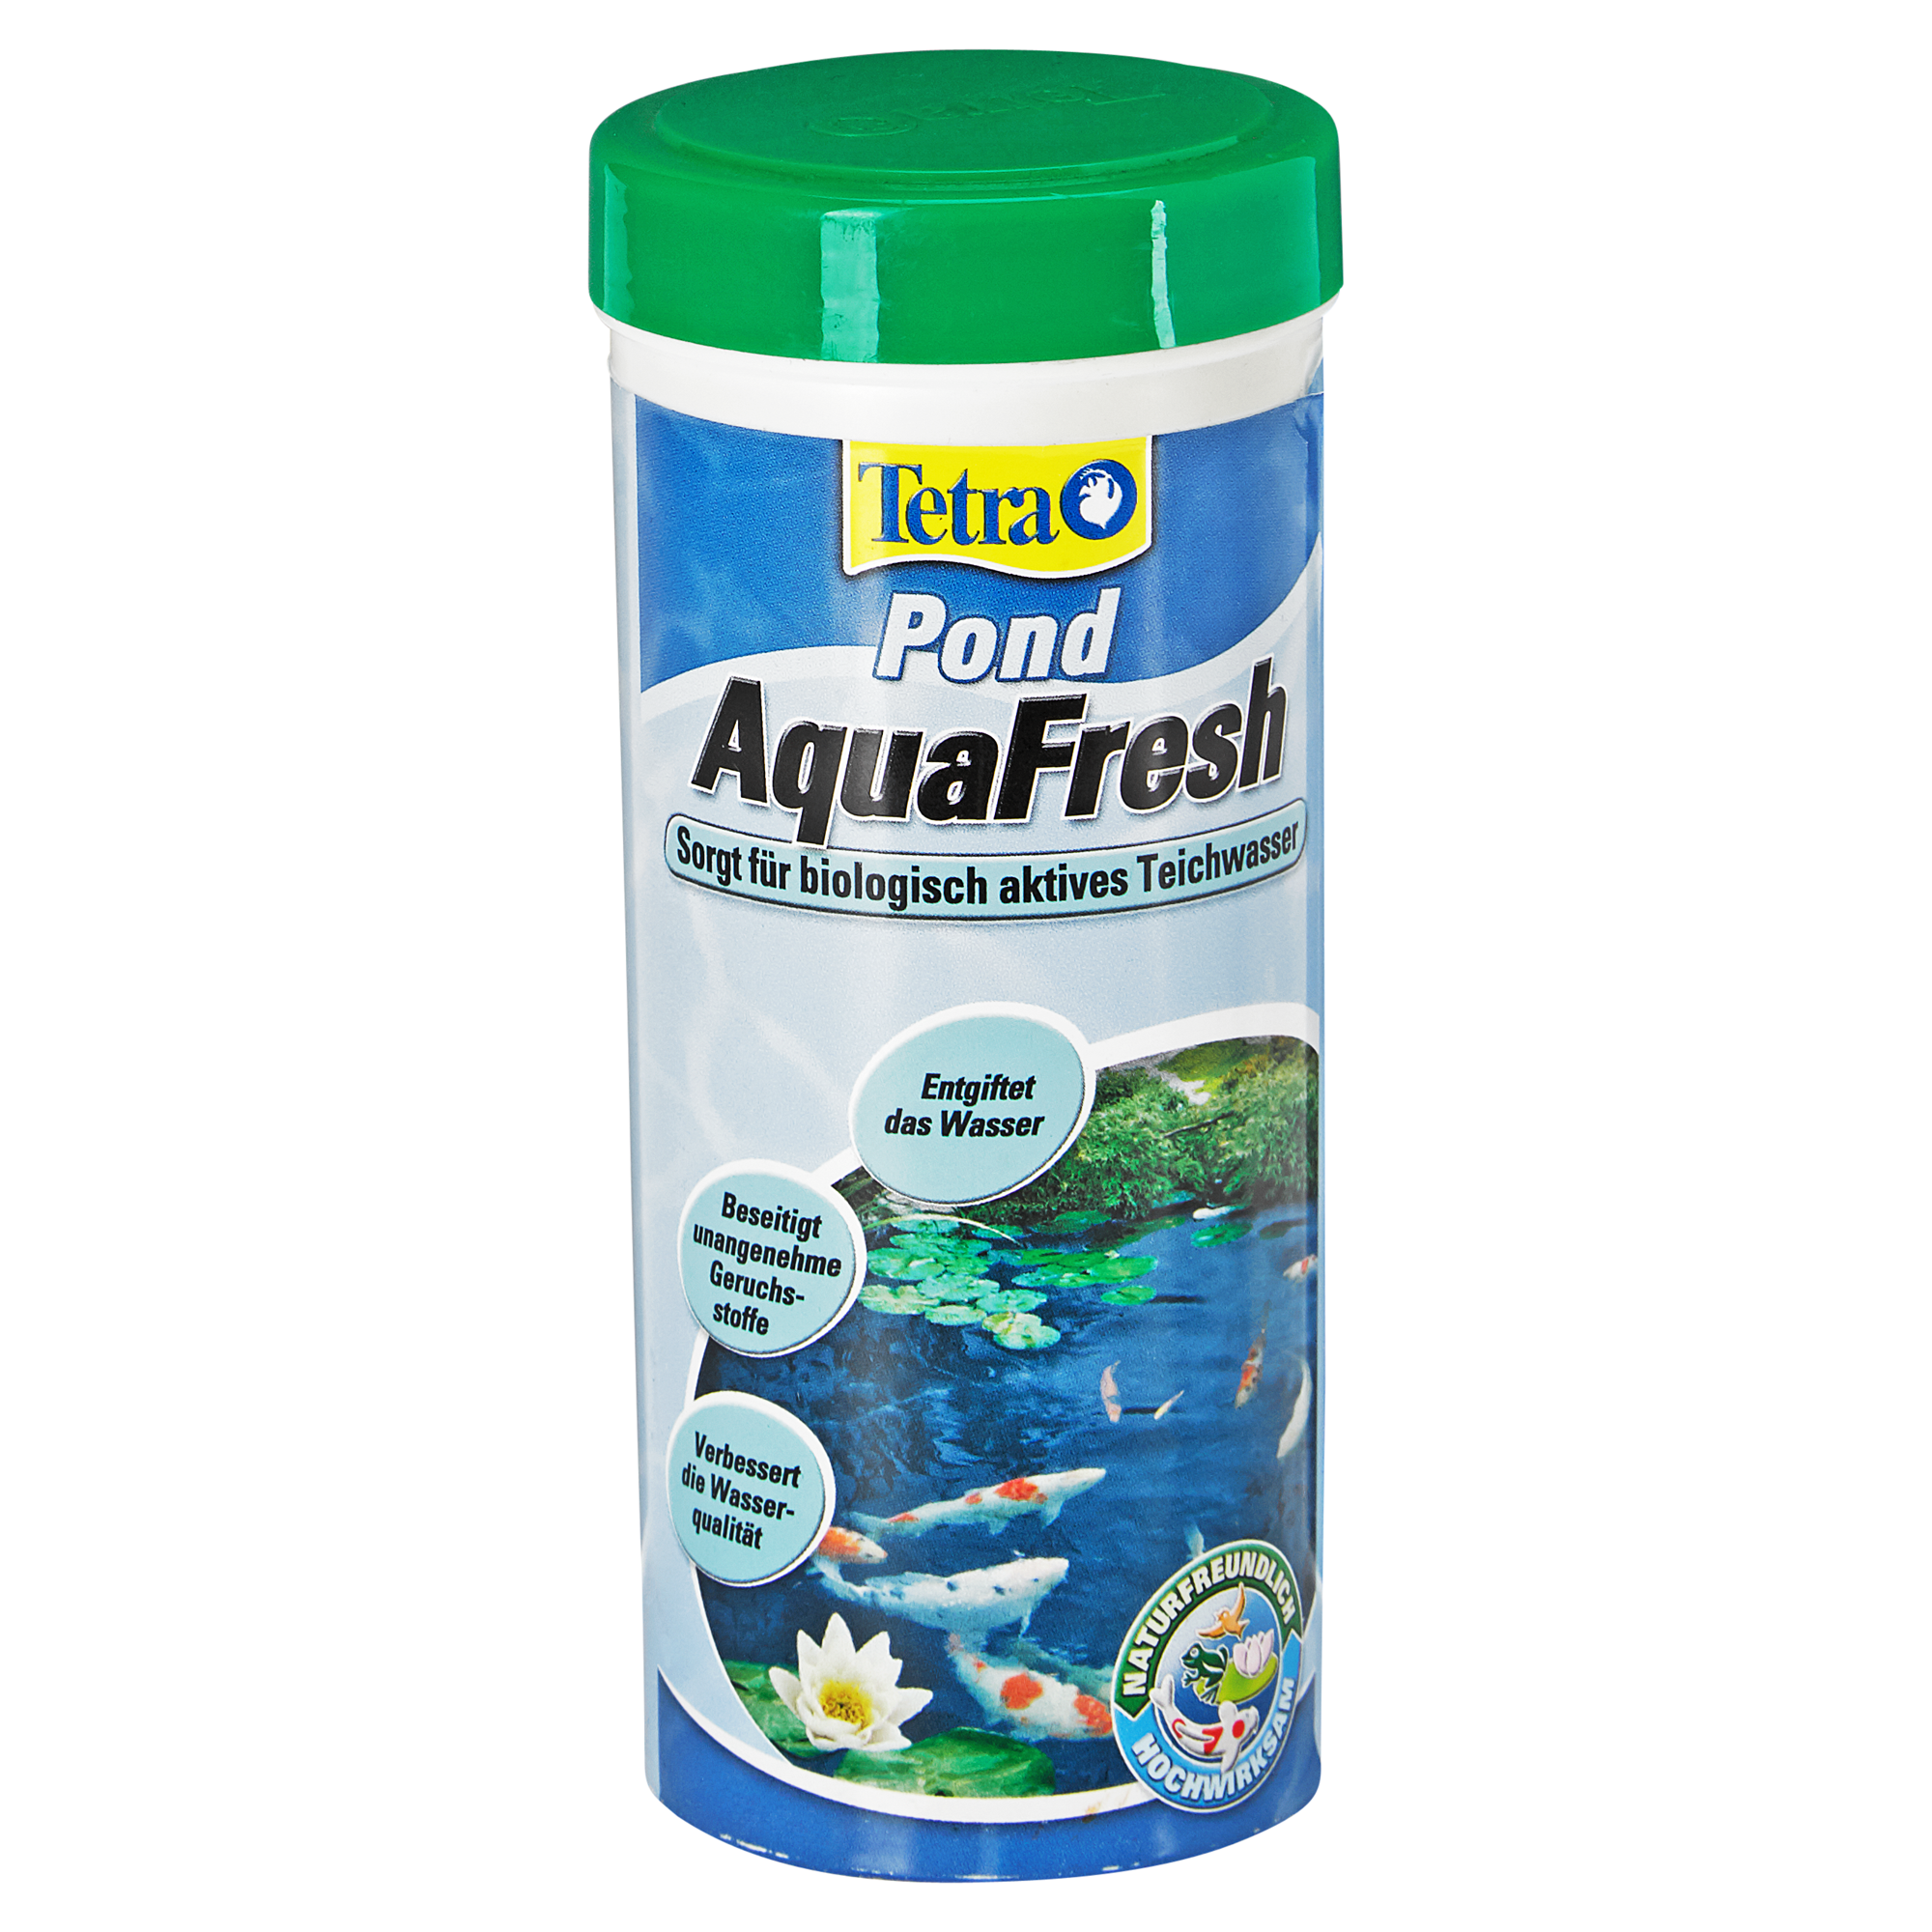 Wasseraufbereiter "AquaFresh" 300 ml + product picture